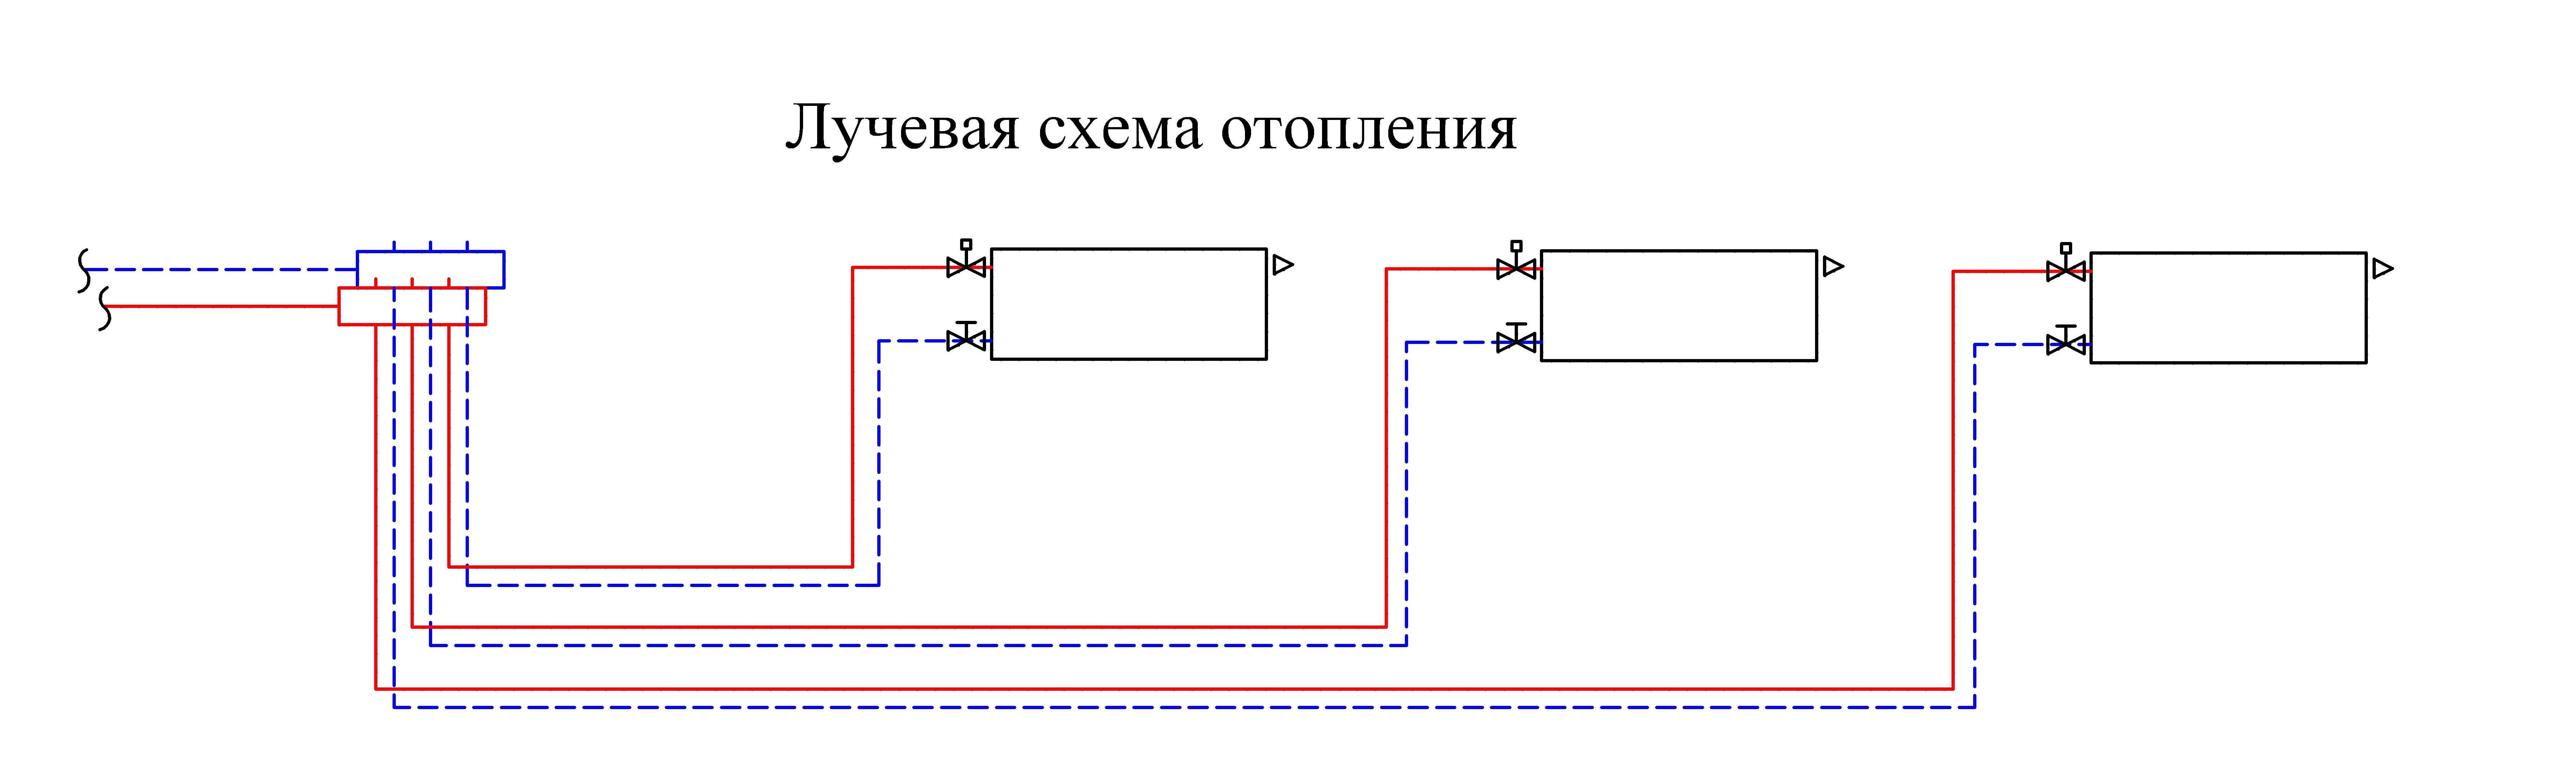 Схема лучевой системы отопления